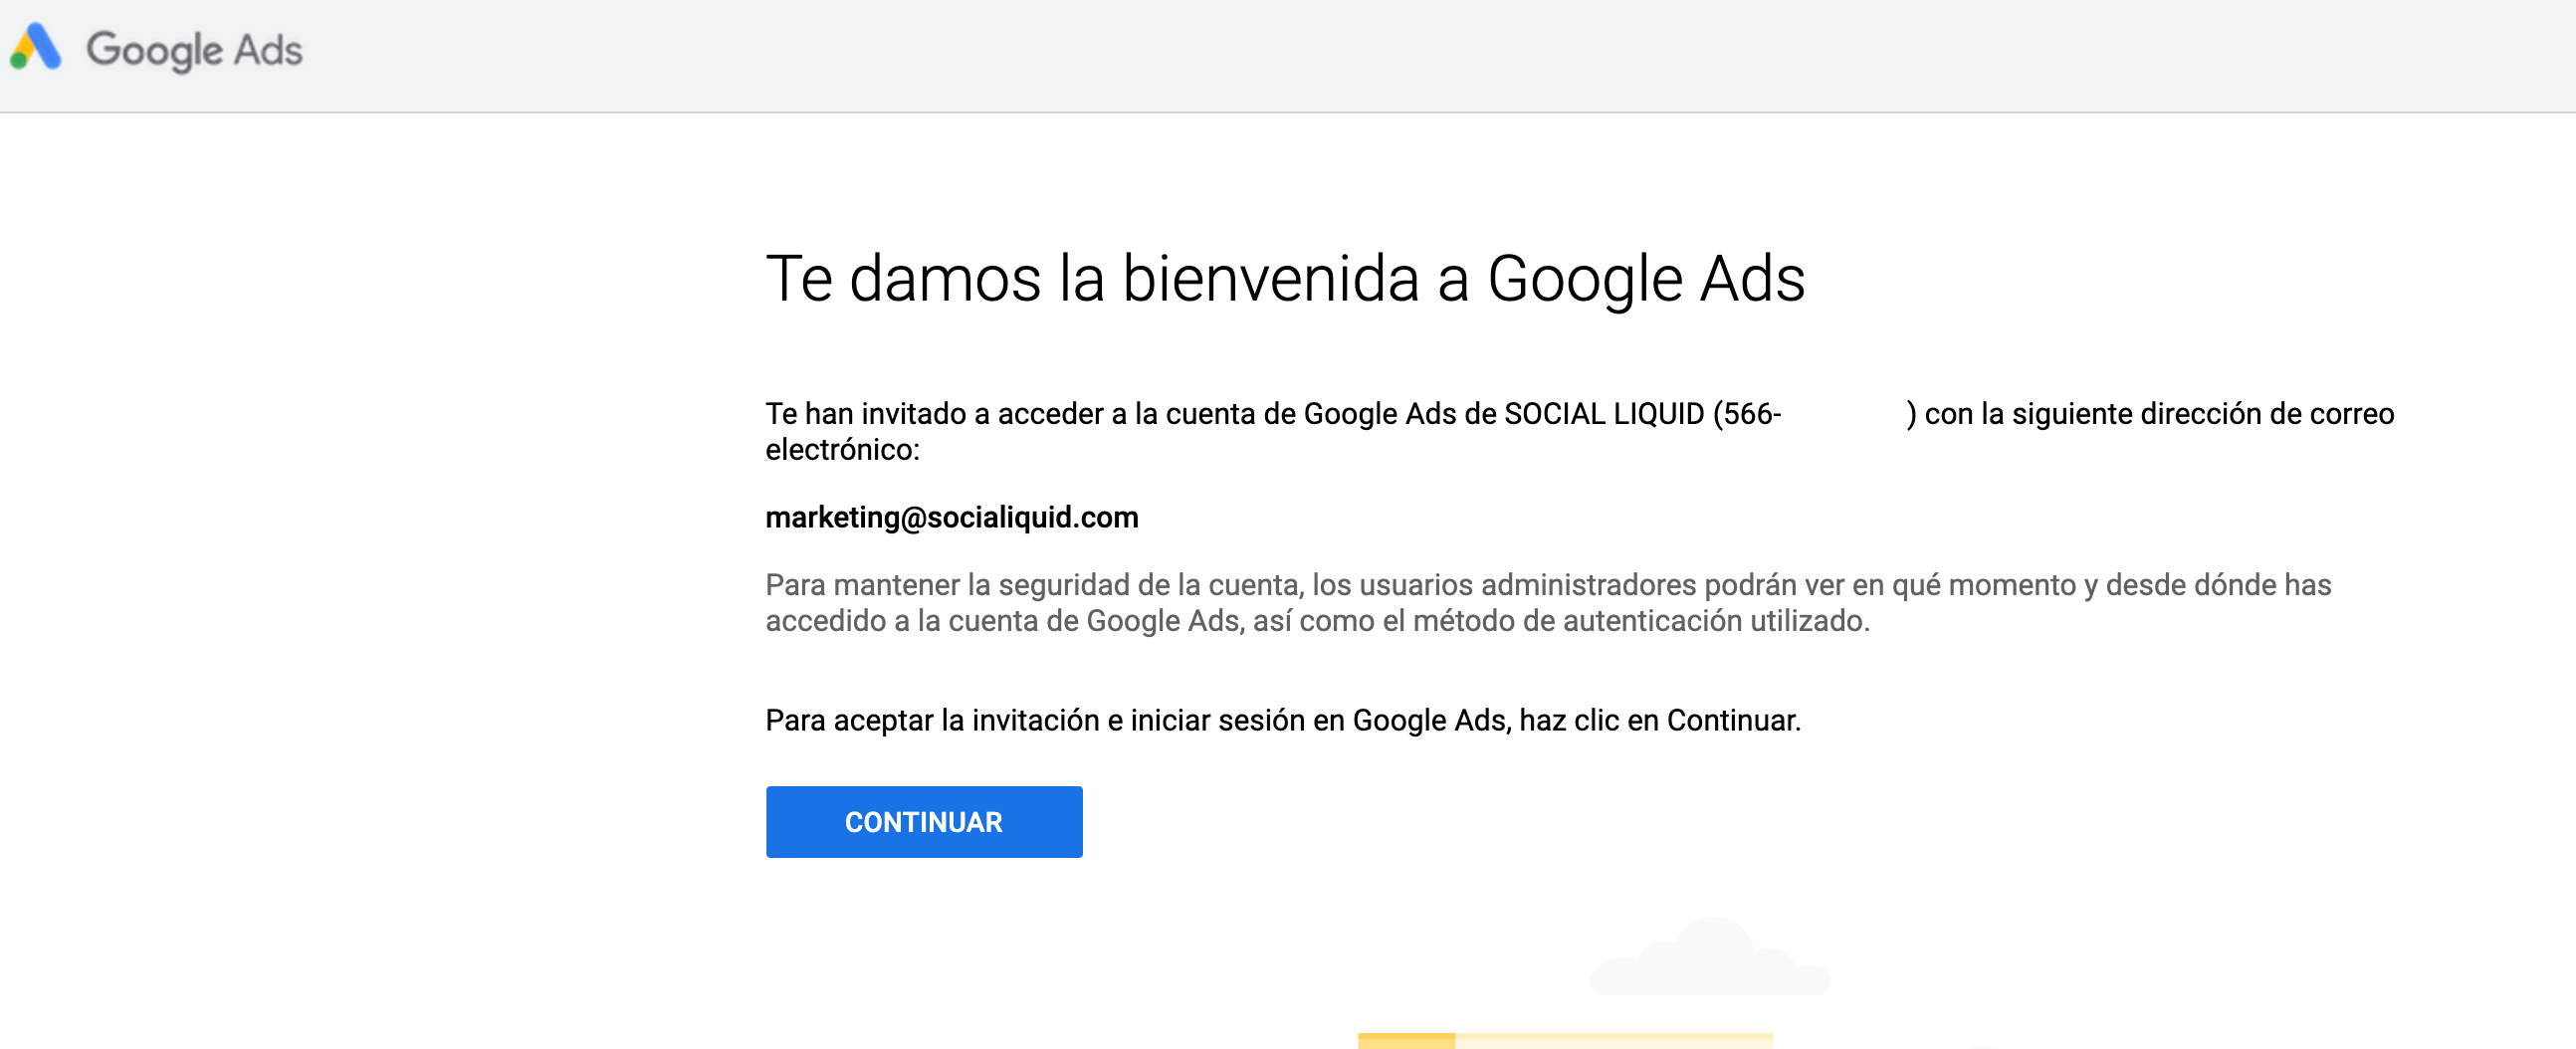 Google Ads: cómo dar acceso con tu cuenta a otros